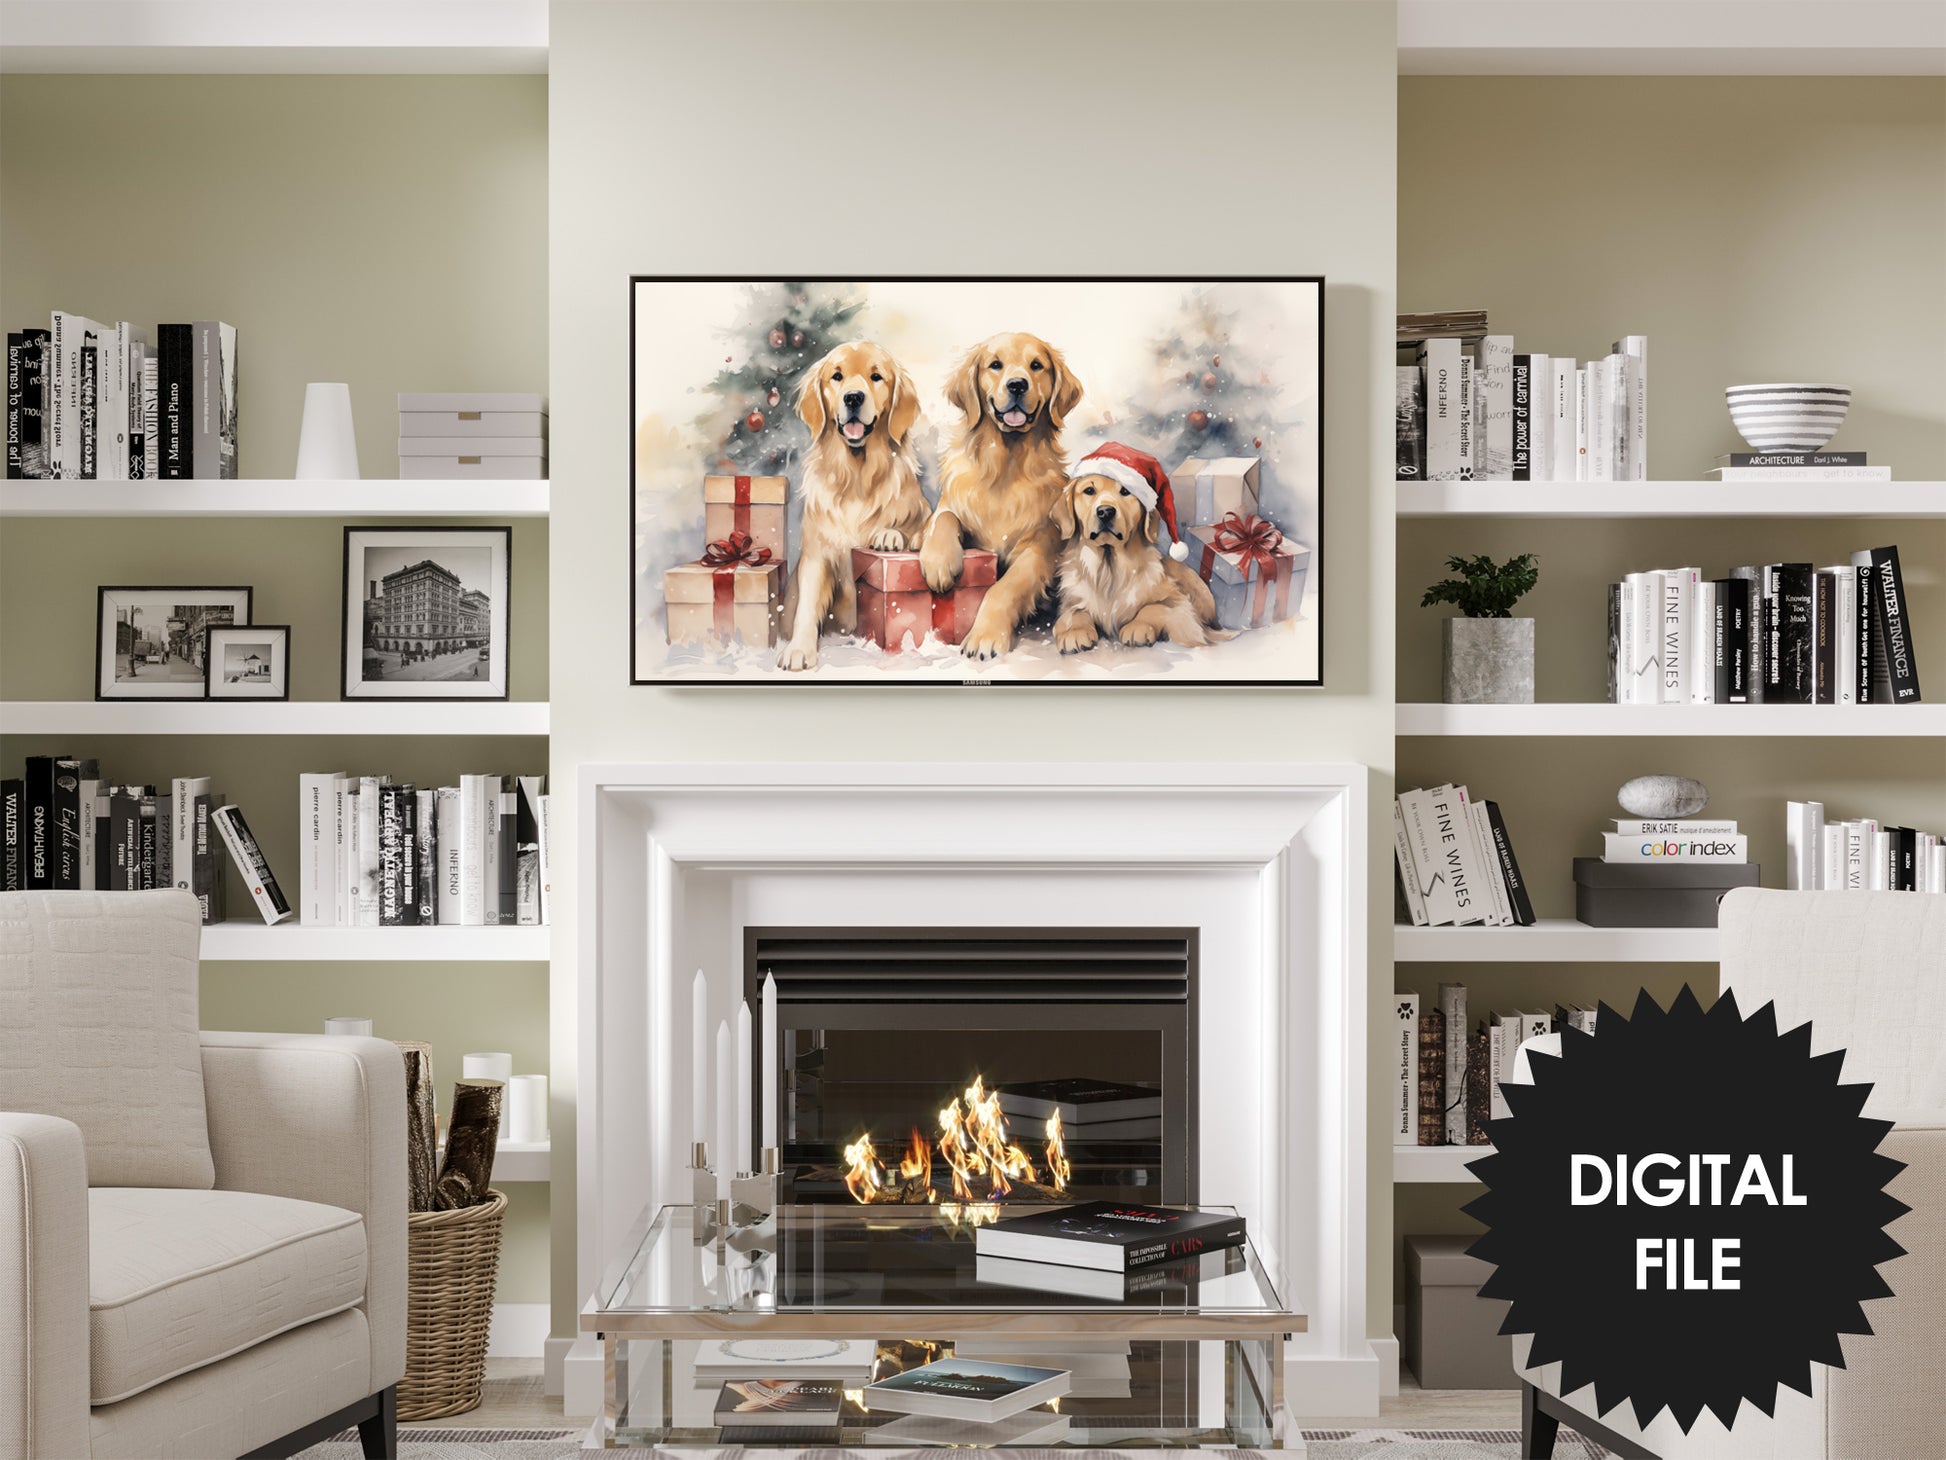 Christmas Retrievers Frame TV Art preview on Samsung Frame TV in modern living room